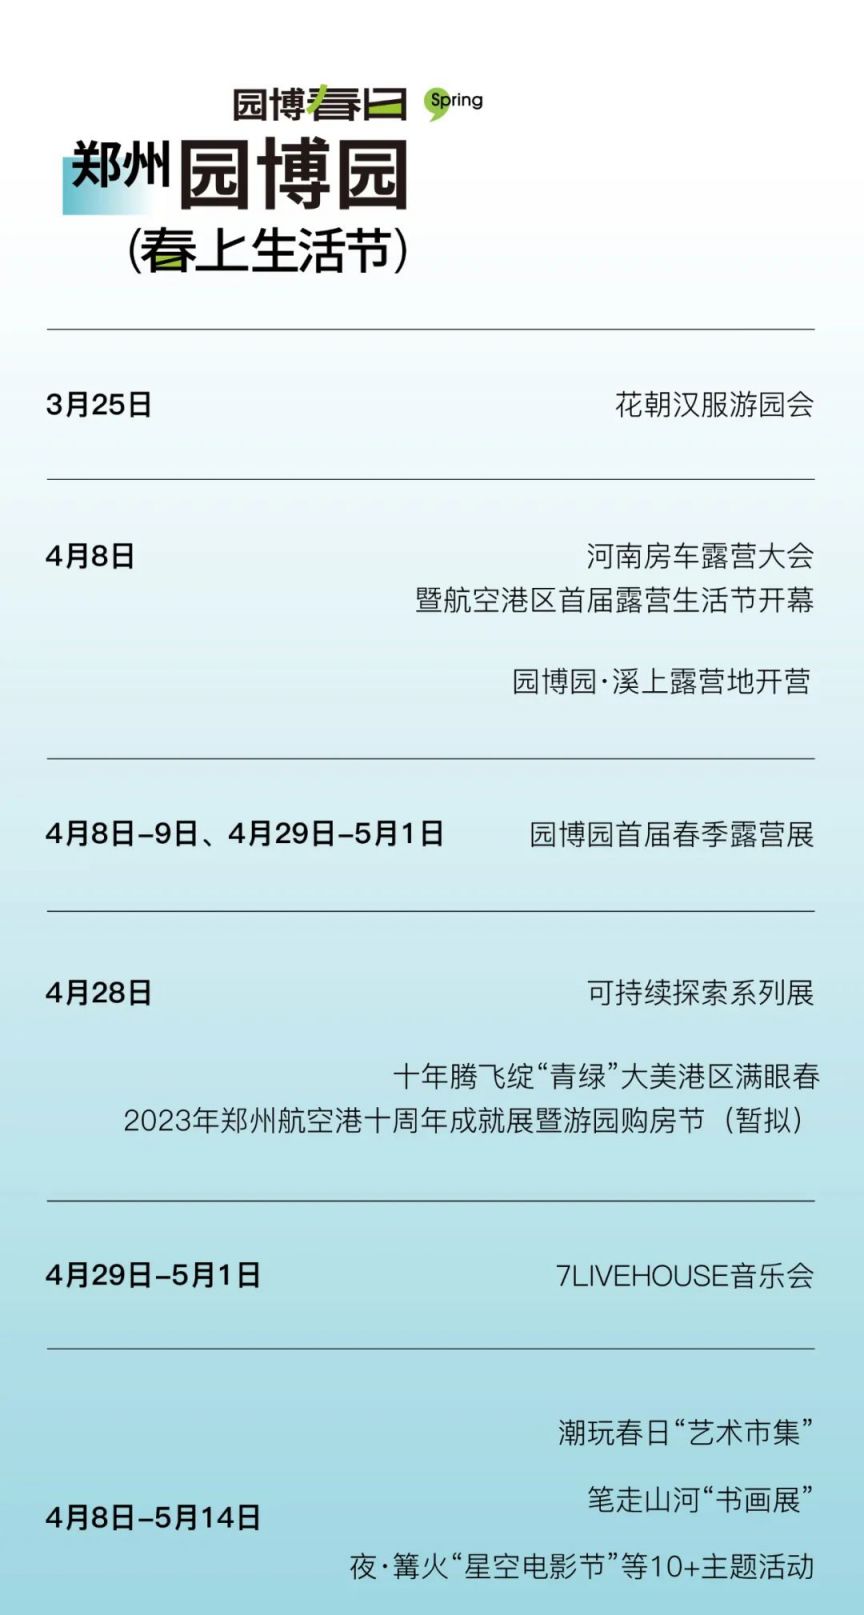 郑州园博园春上生活节活动时间表 郑州园博园春上生活节活动时间表